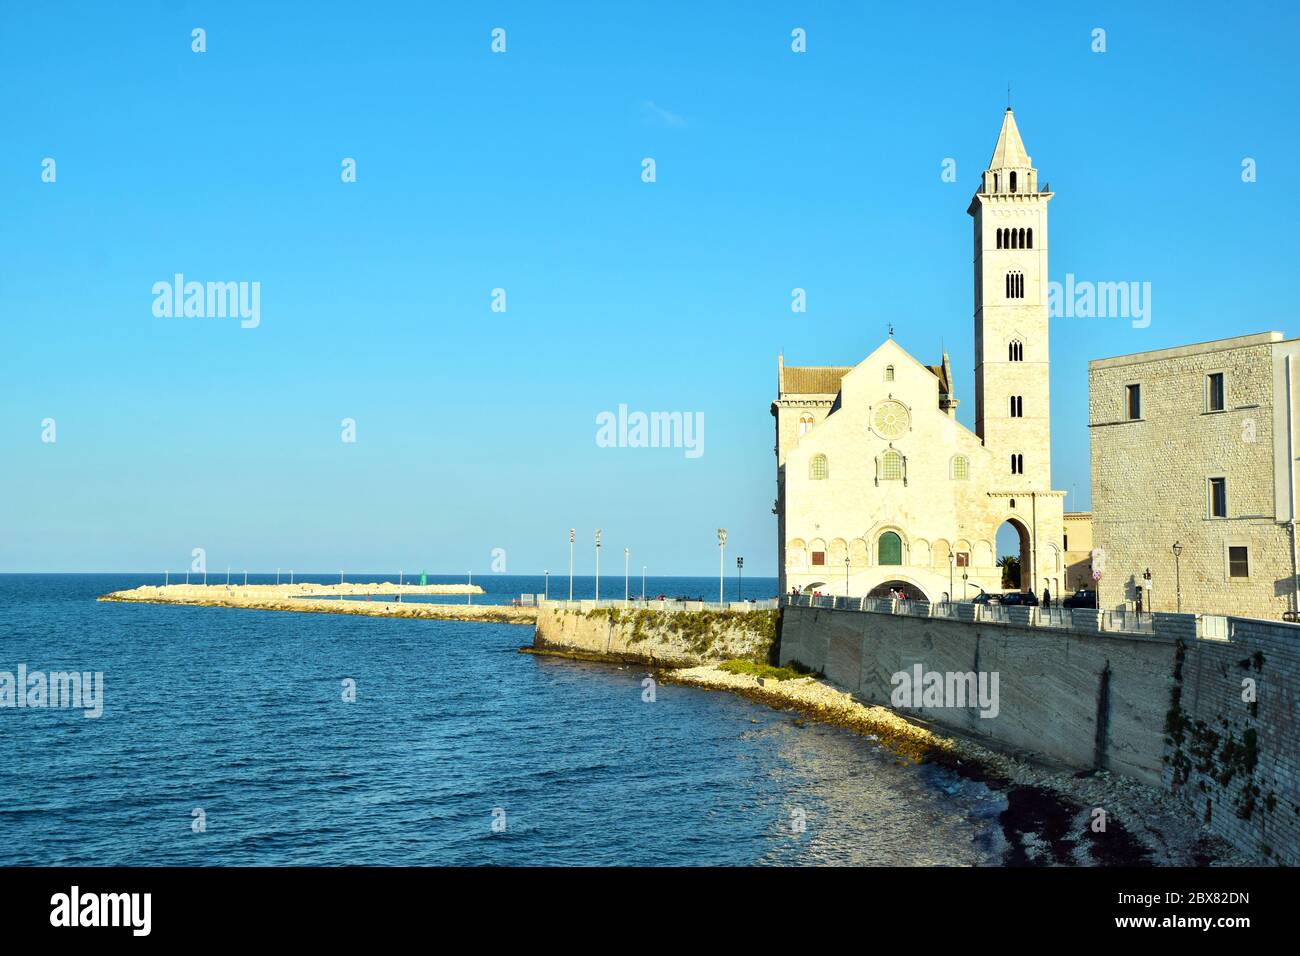 Typische Architektur in Trani in der Region Apulien, Italien Stockfoto